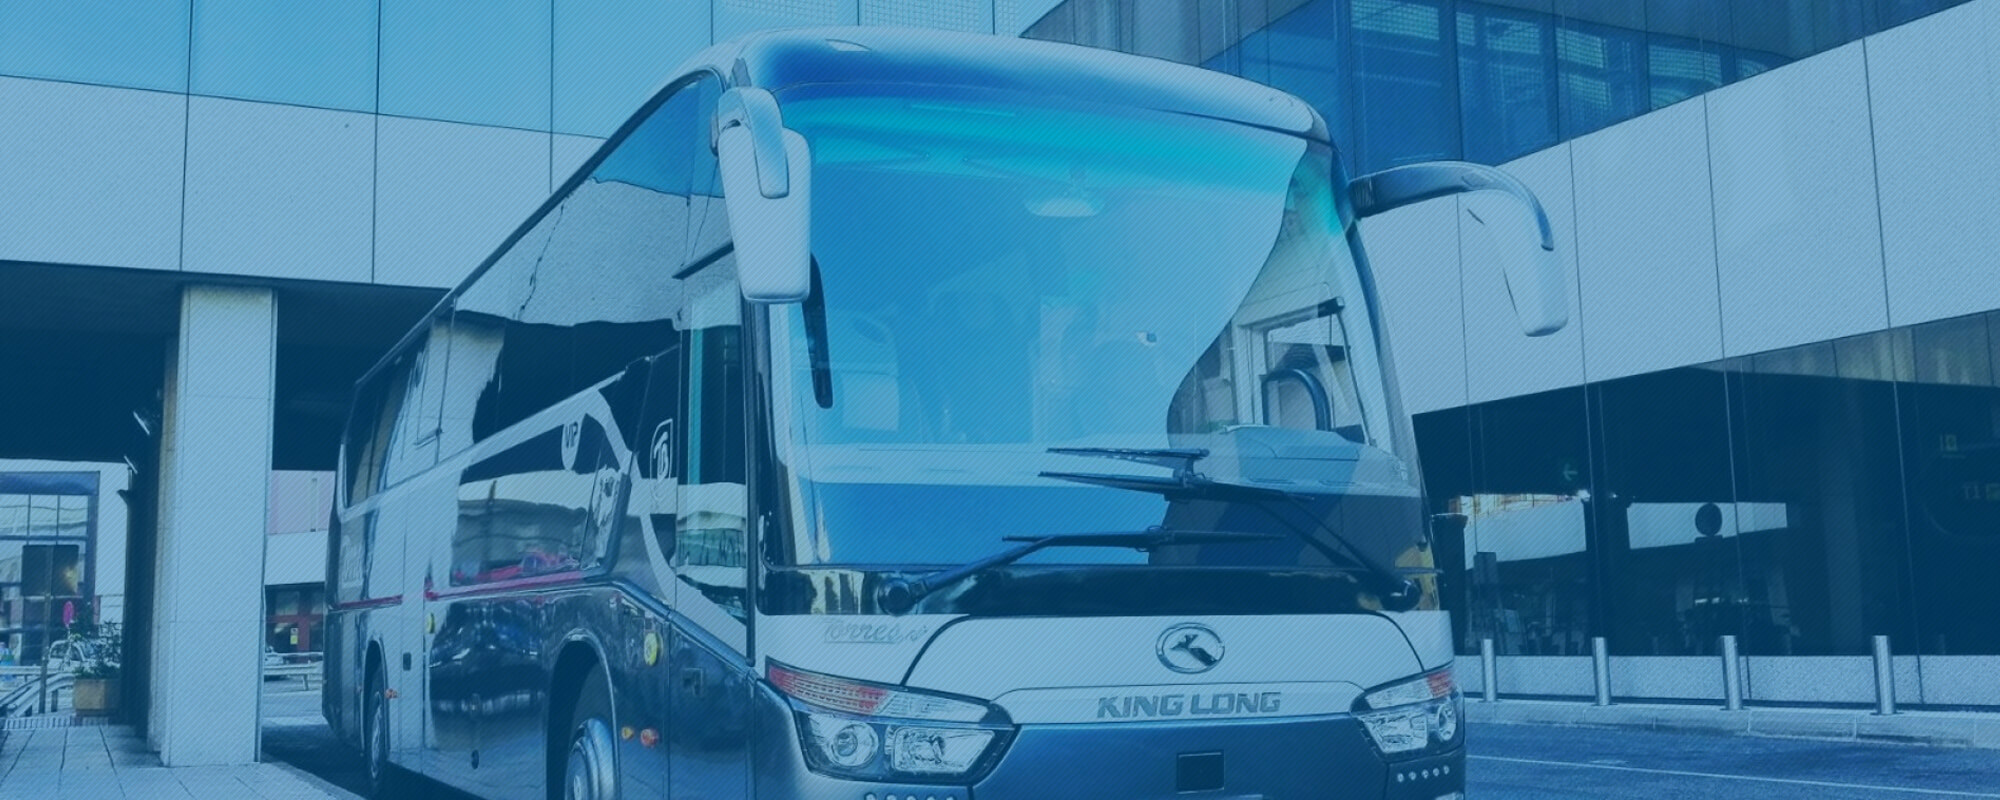 Minibus Hire Services in Newcastle